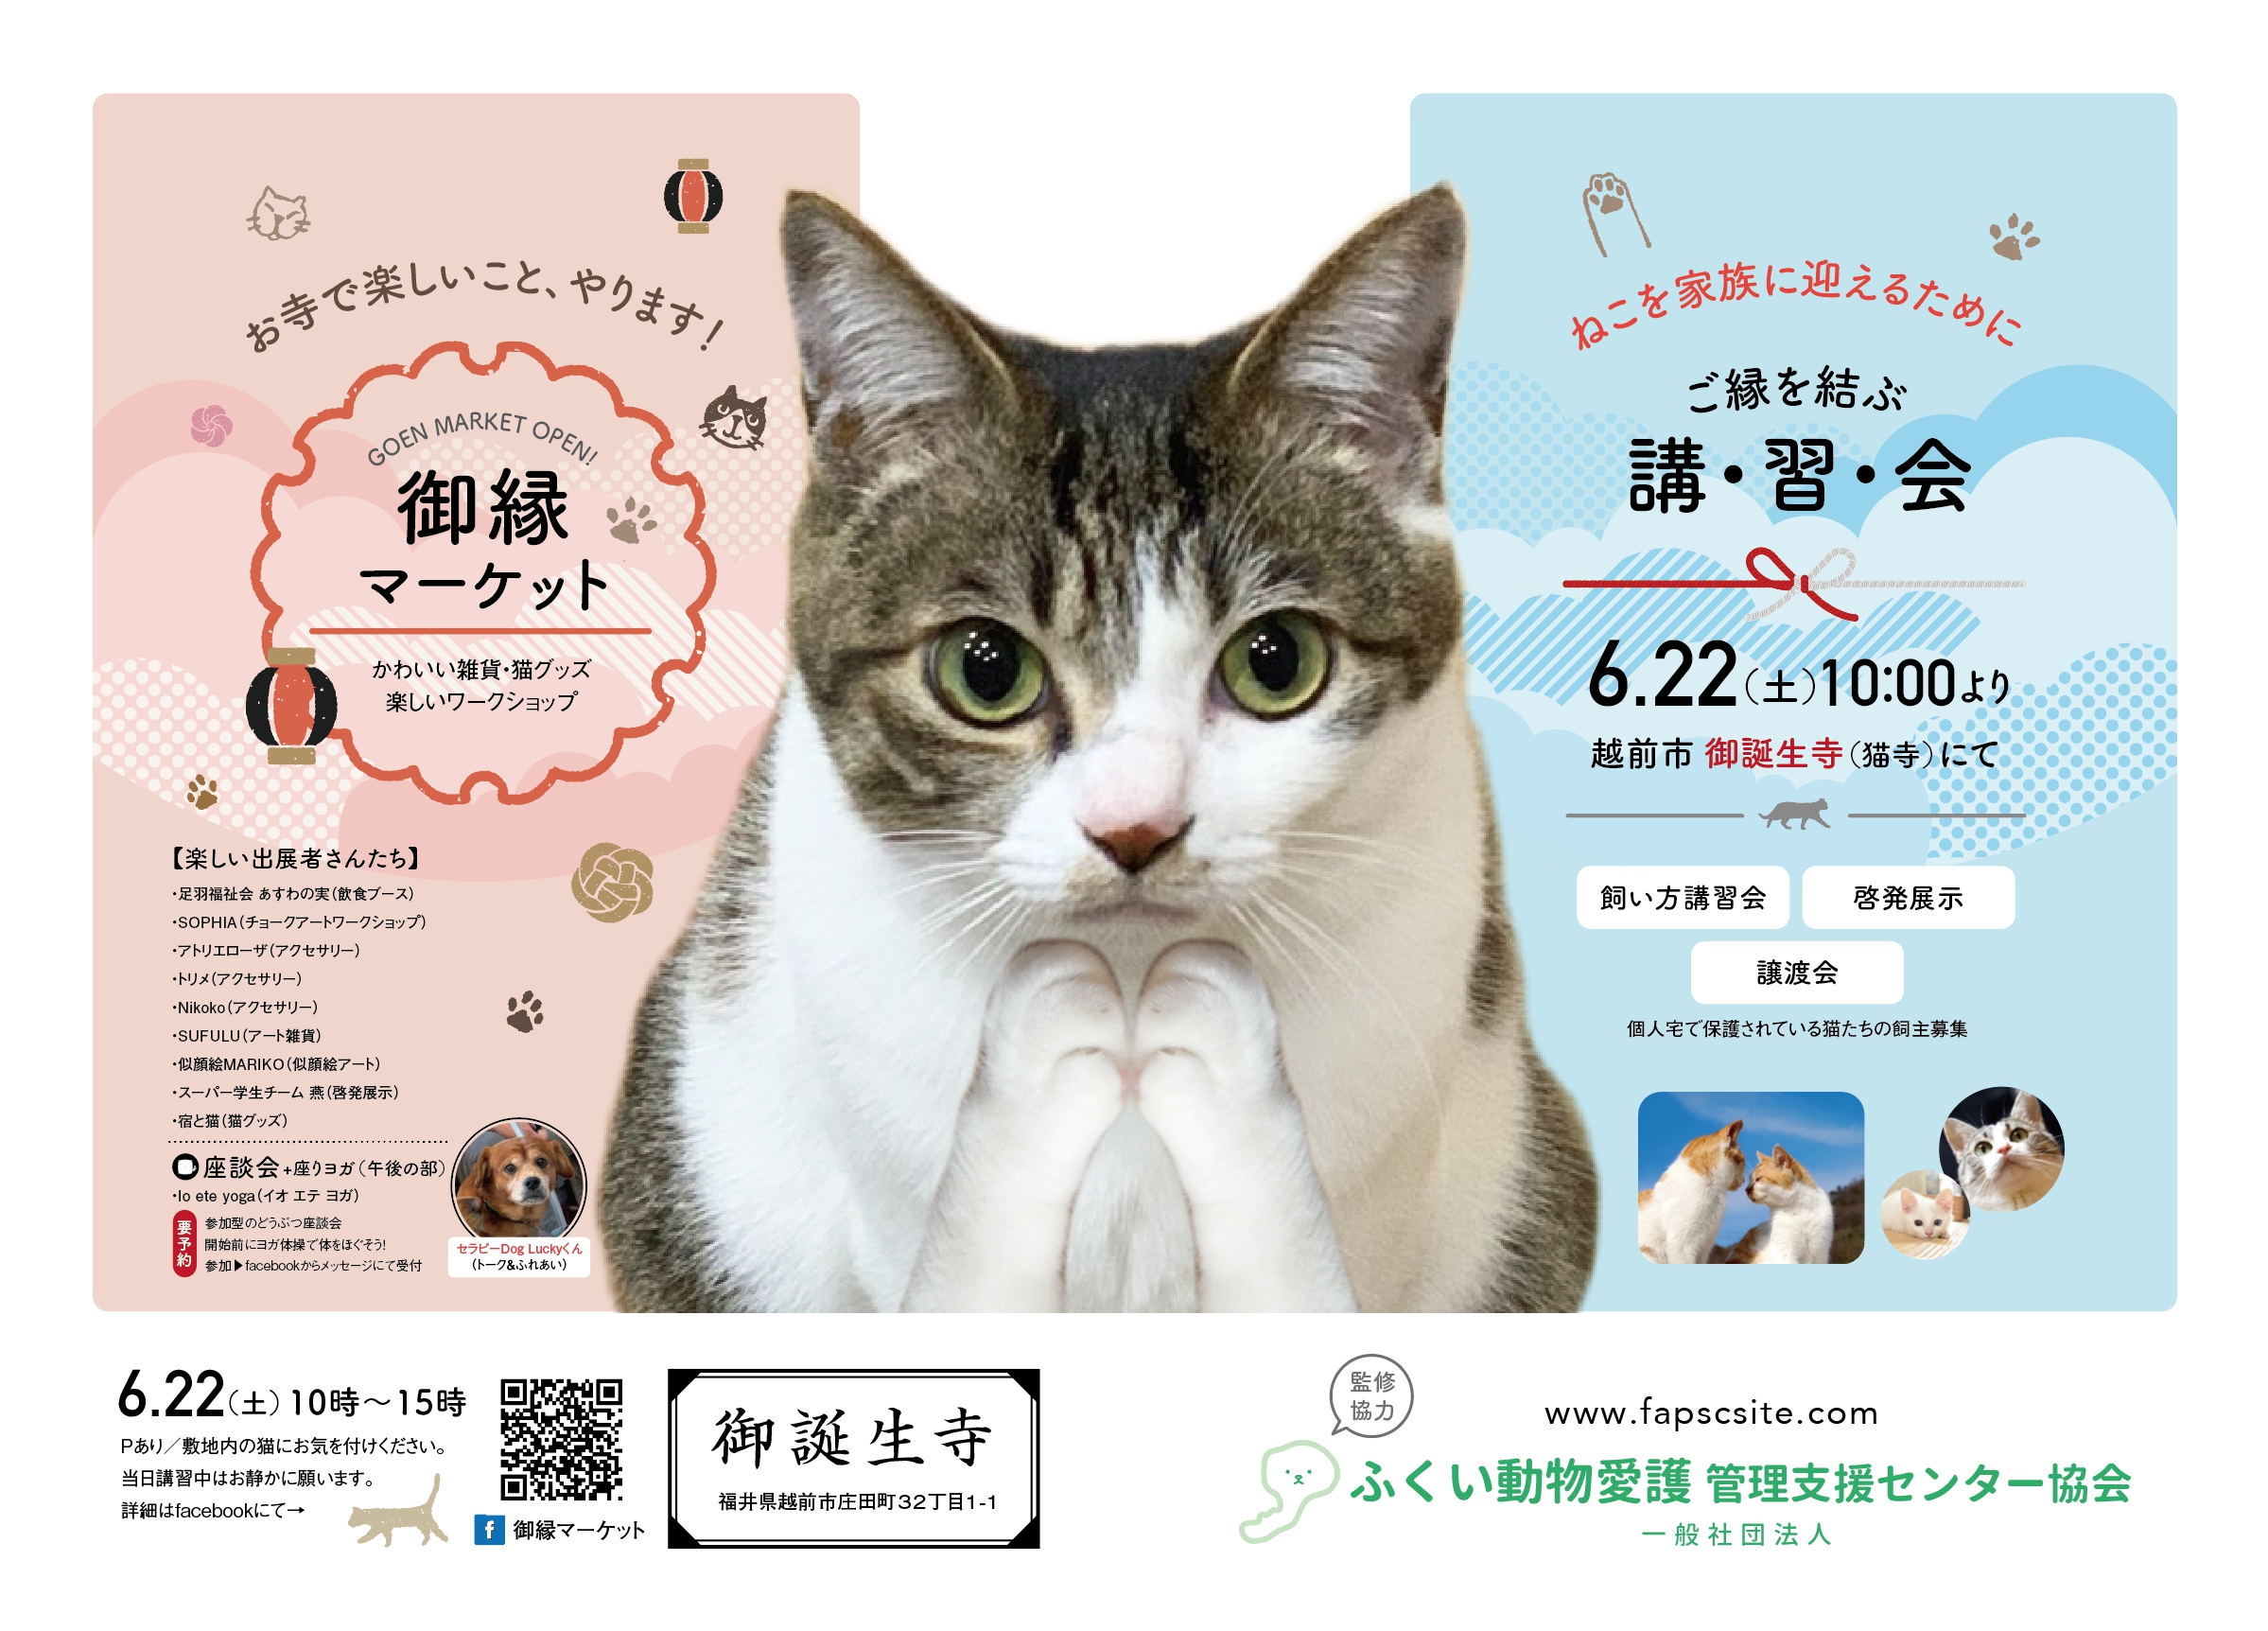 猫寺で有名な「御誕生寺」さんにて開催される猫にちなんだ楽しいマーケットのポスター。福井の女性を応援するくらし情報、くらしくふくい。